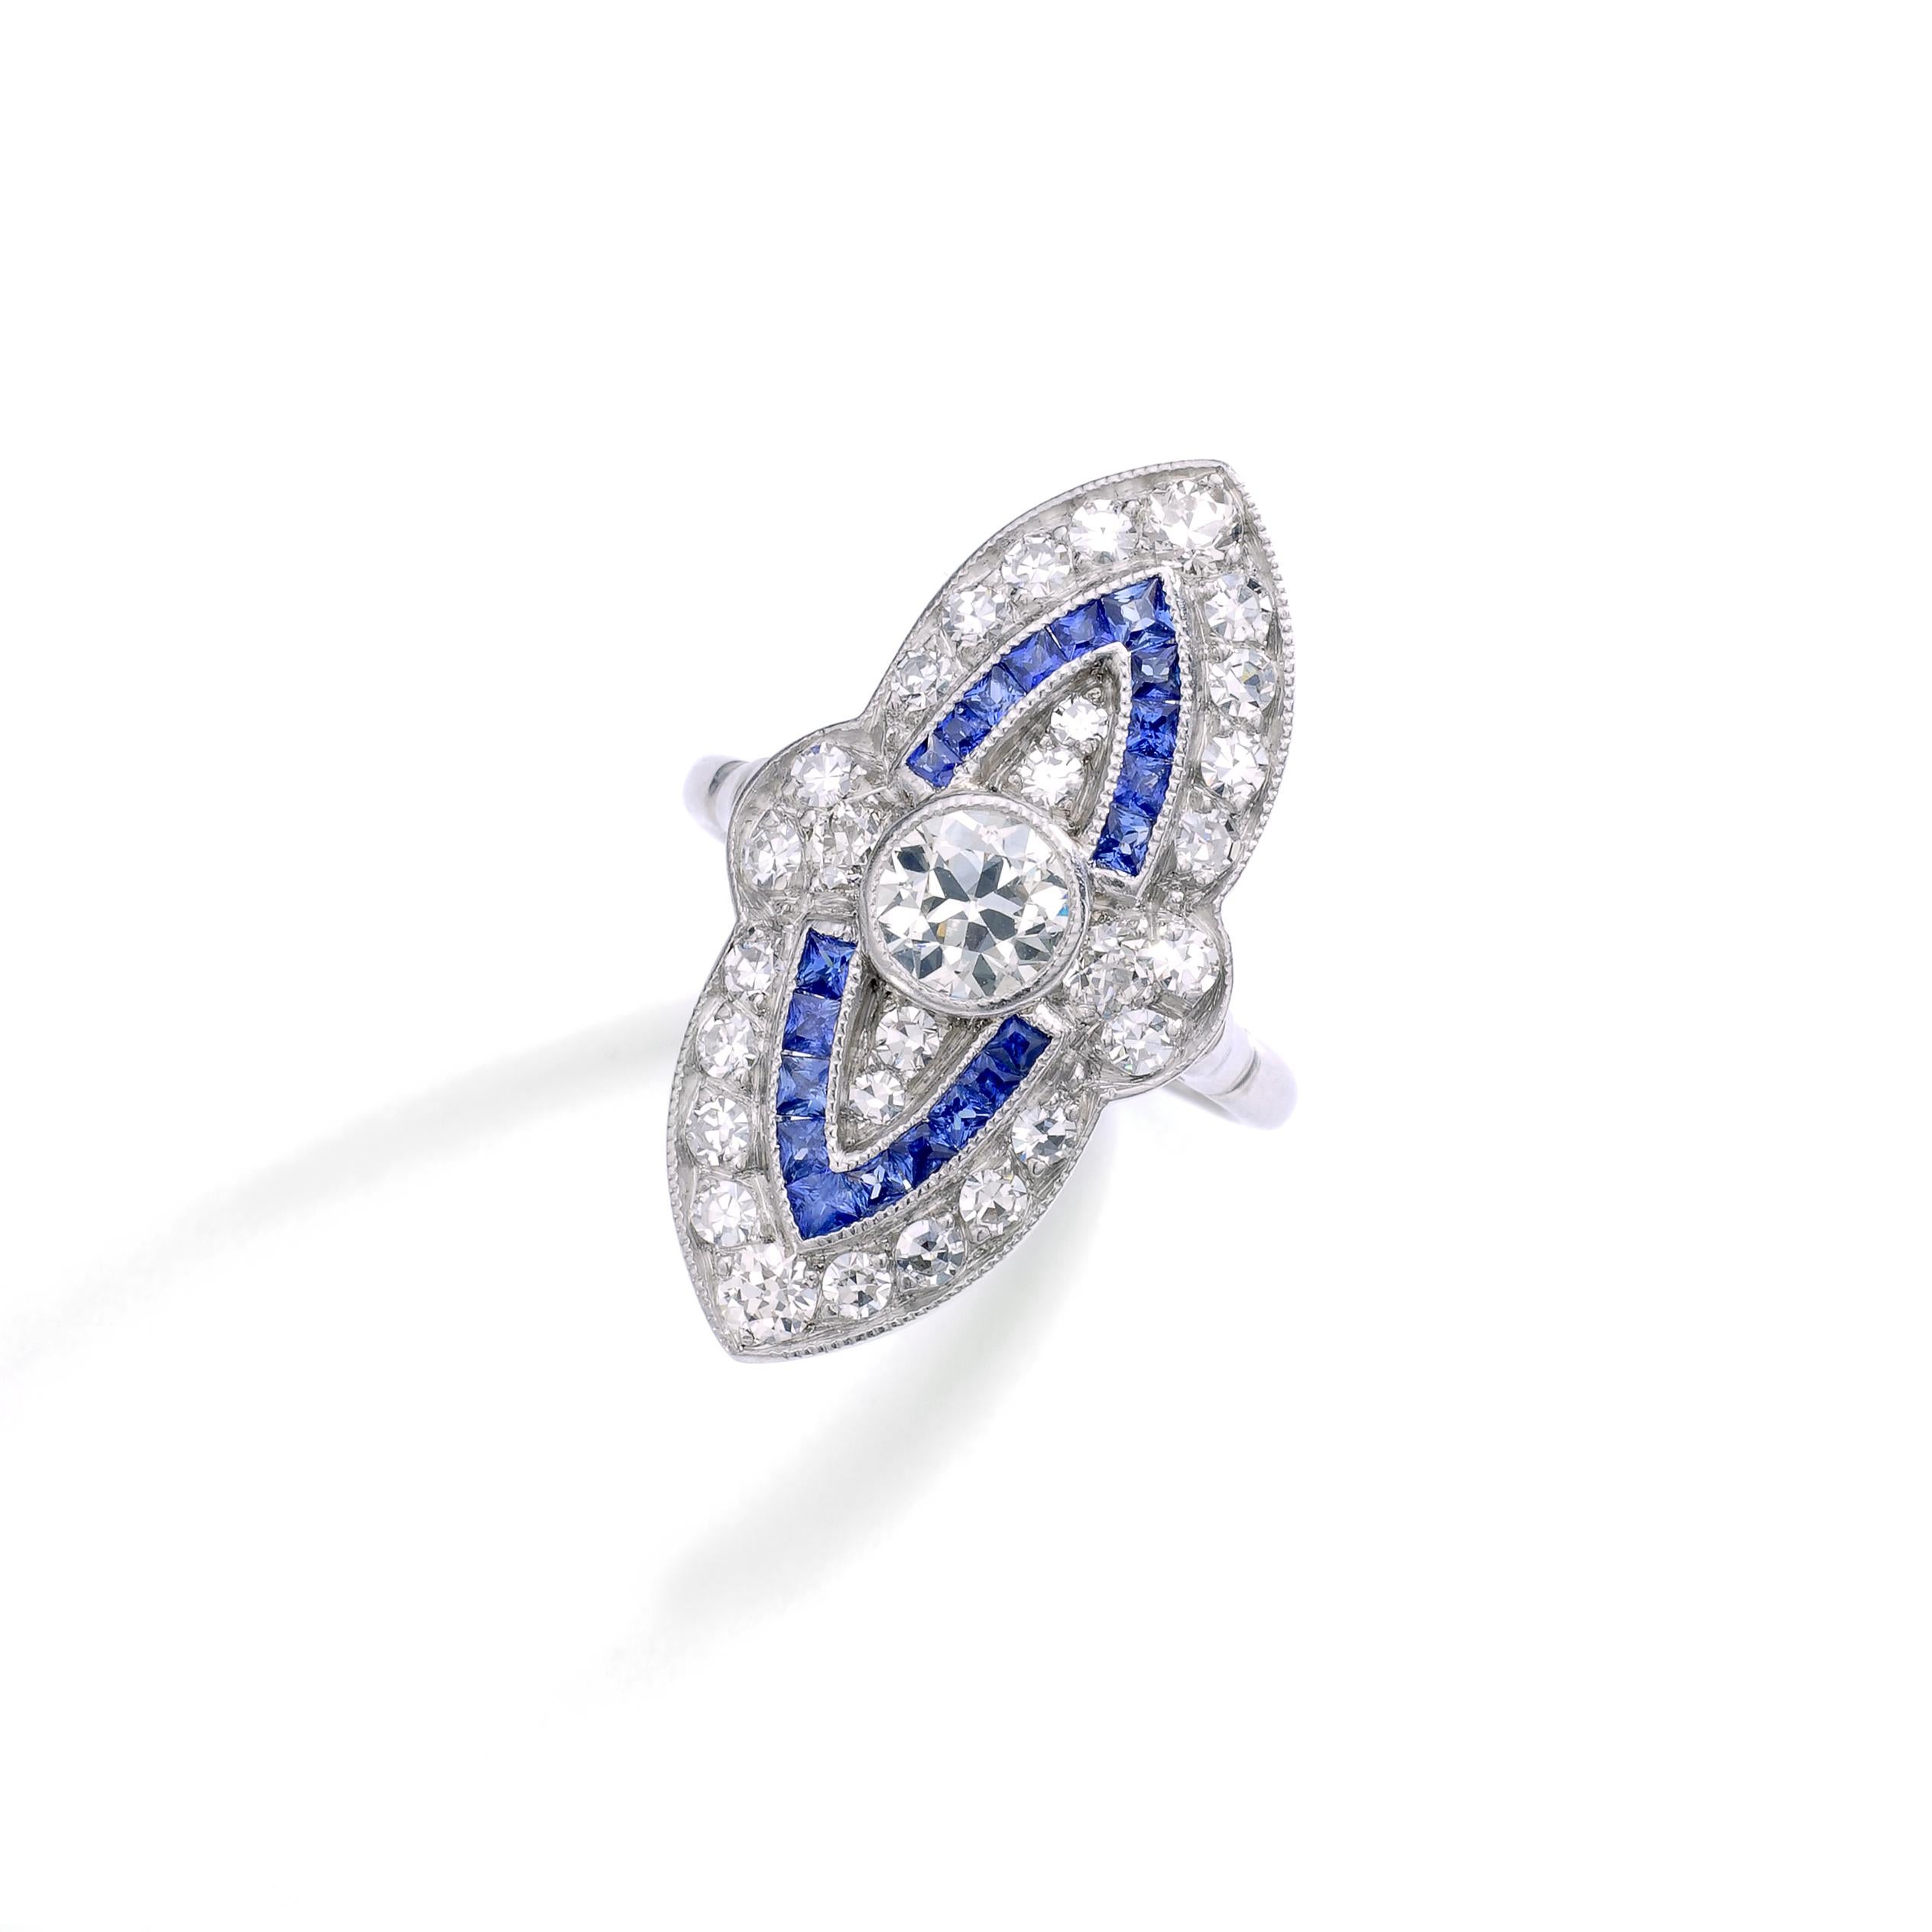 Art Deco Design Marquise Diamant und kalibriert Saphir Platin Ring.
Gesamtgewicht der Diamanten: ca. 1,50 Karat.

Ringgröße: 6.